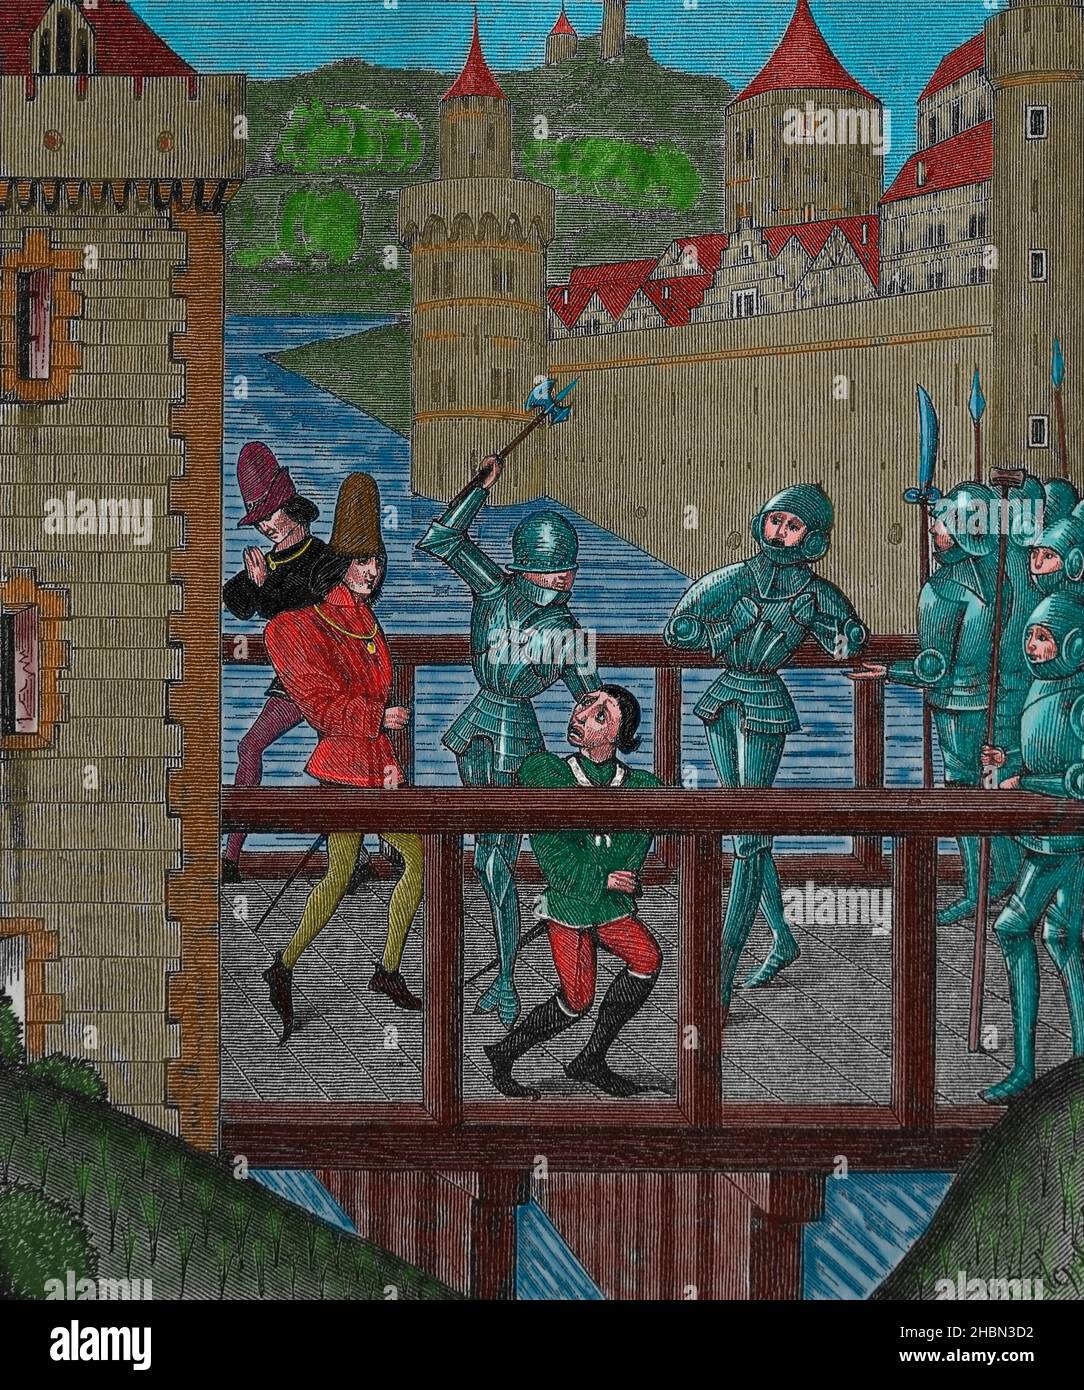 Assassination of the Duke of Burgundy, John the Fearless. on Bridge of Montereau, 1419. Chronicles of Monstrelet, 15th century. Stock Photo